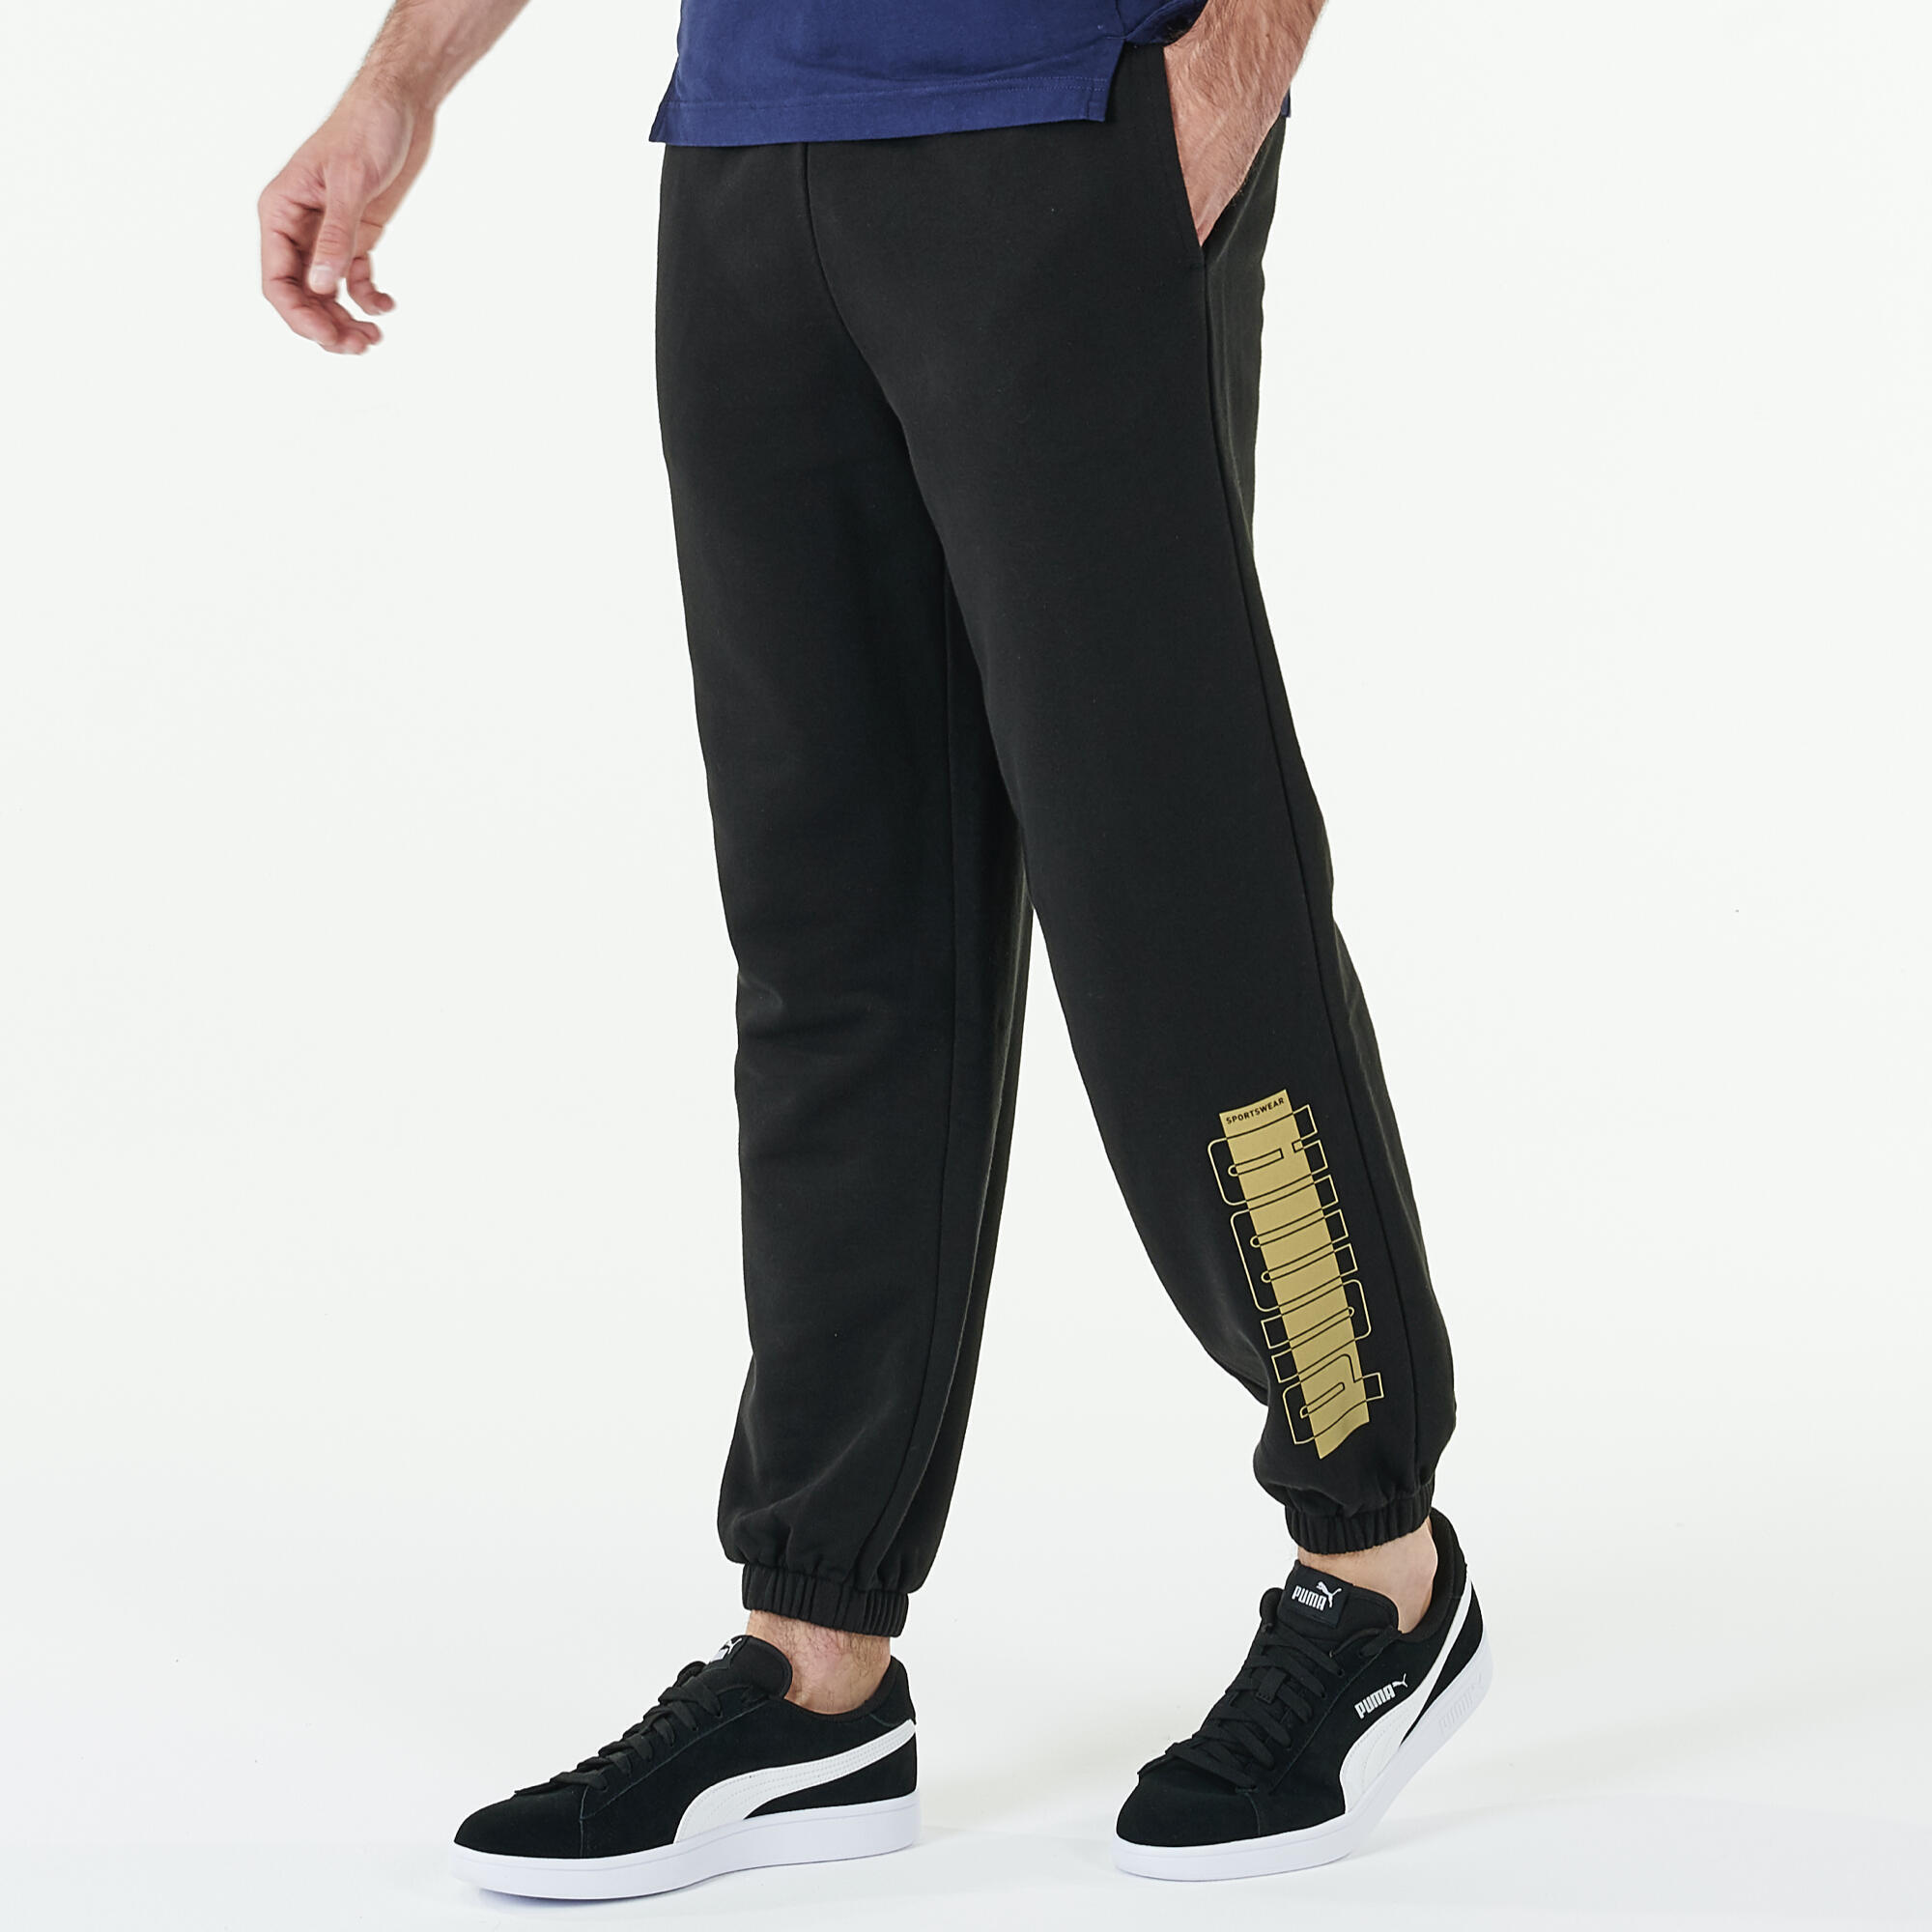 Pantalon de trening fitness Xmas Puma Negru-Auriu Damă Bărbați